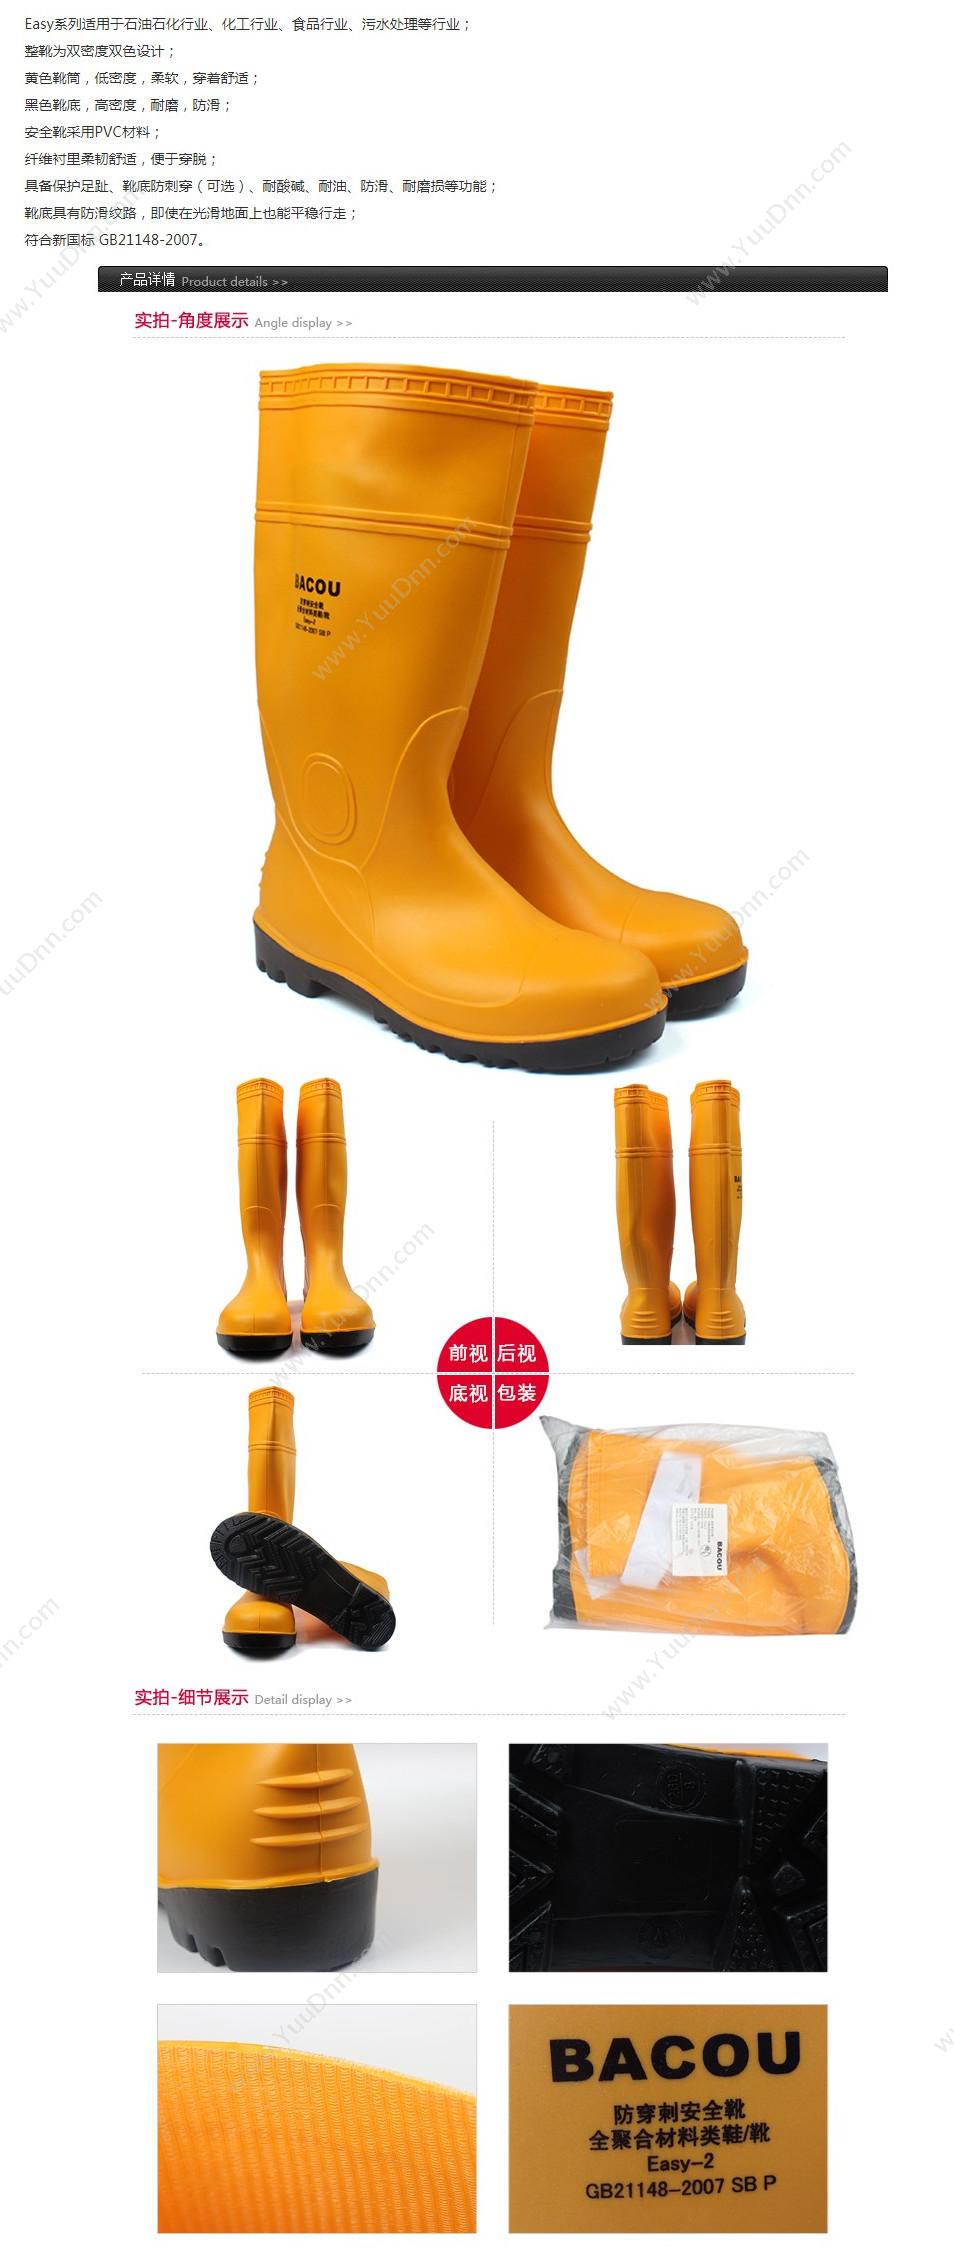 霍尼韦尔 Honeywell 75707 PVC 安全靴Easy 轻型 44 橘黄色 10双/箱 轻便鞋安全靴